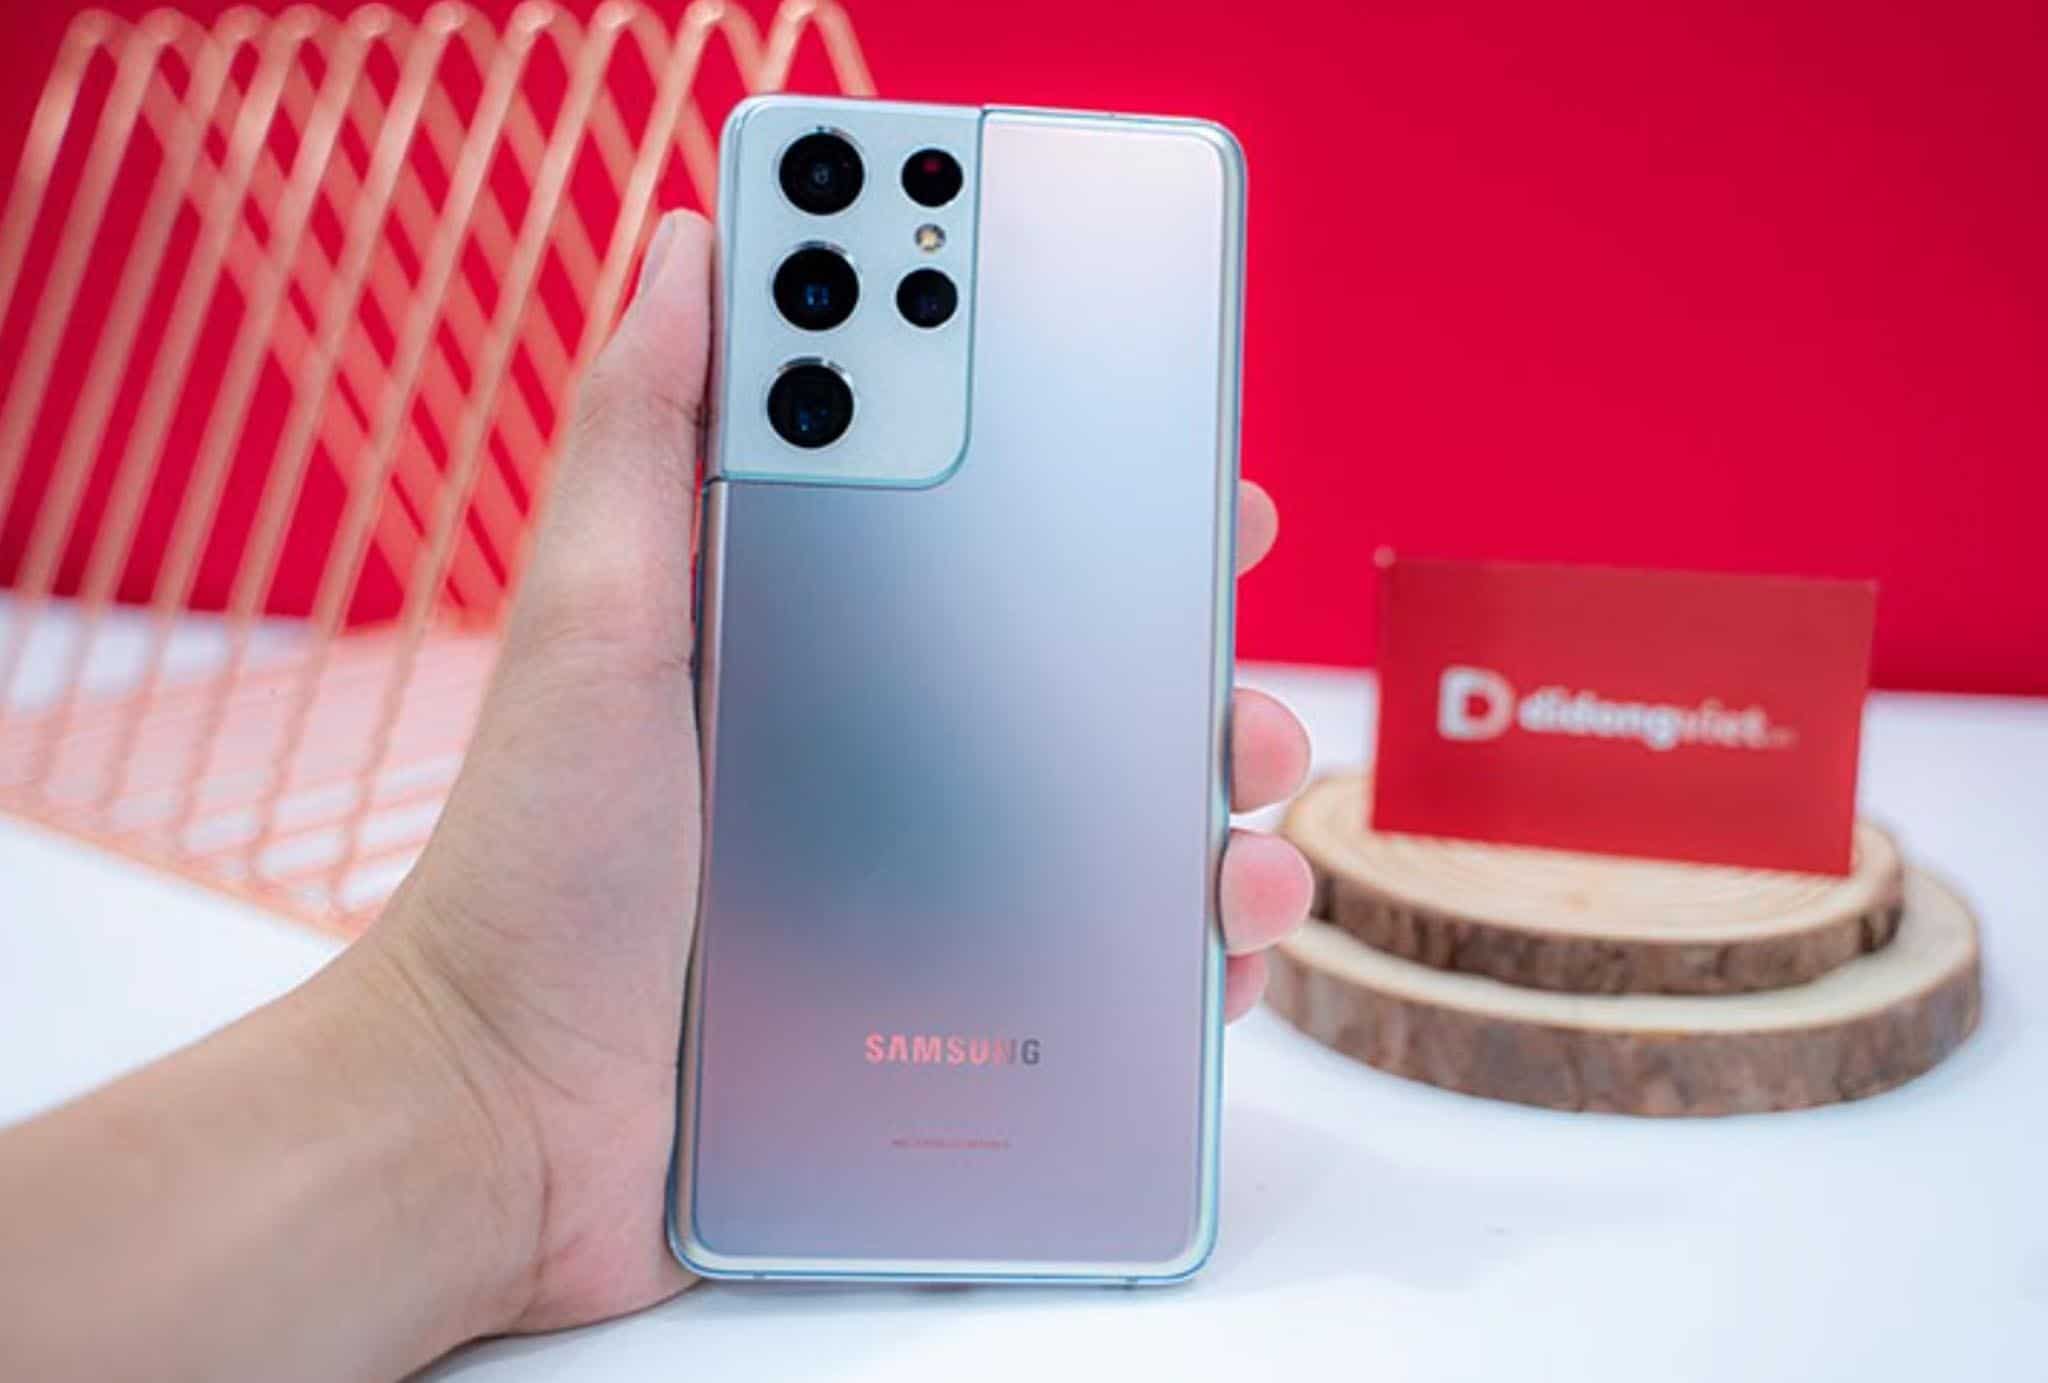 Samsung Galaxy S21+ 5G, S21 Ultra 5G mở bán, 30% người dùng đặt trước được trả hàng